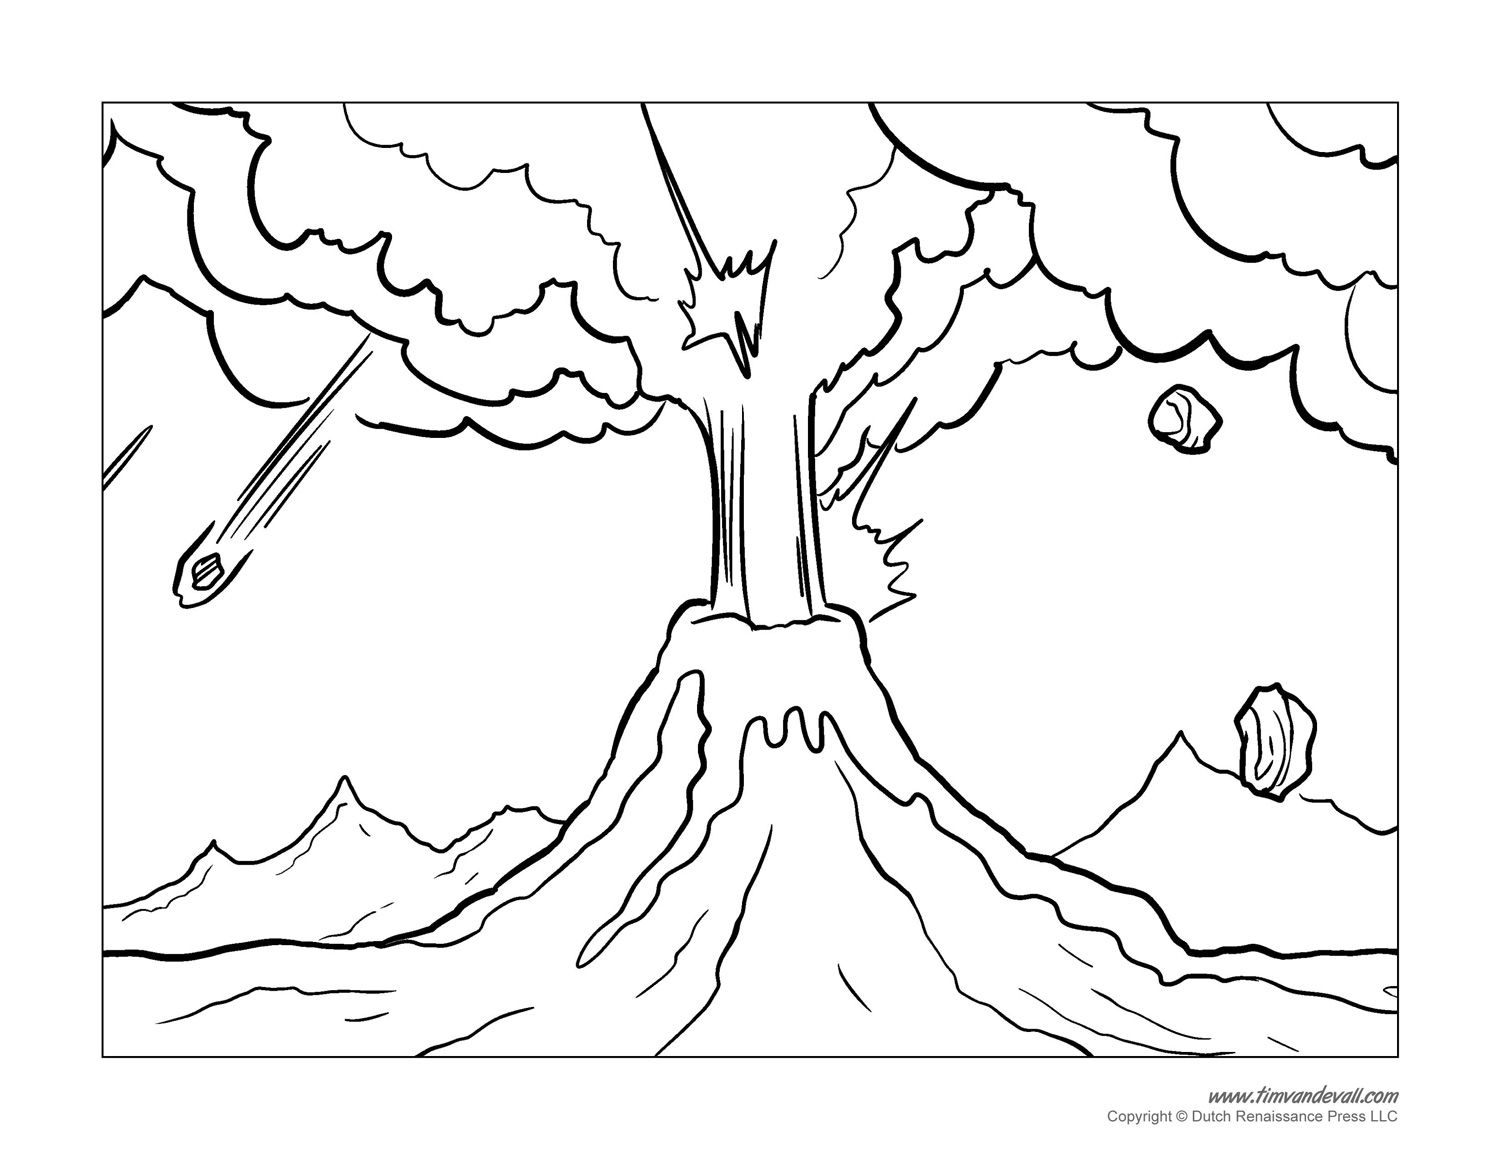 Ash Cloud coloring #16, Download drawings